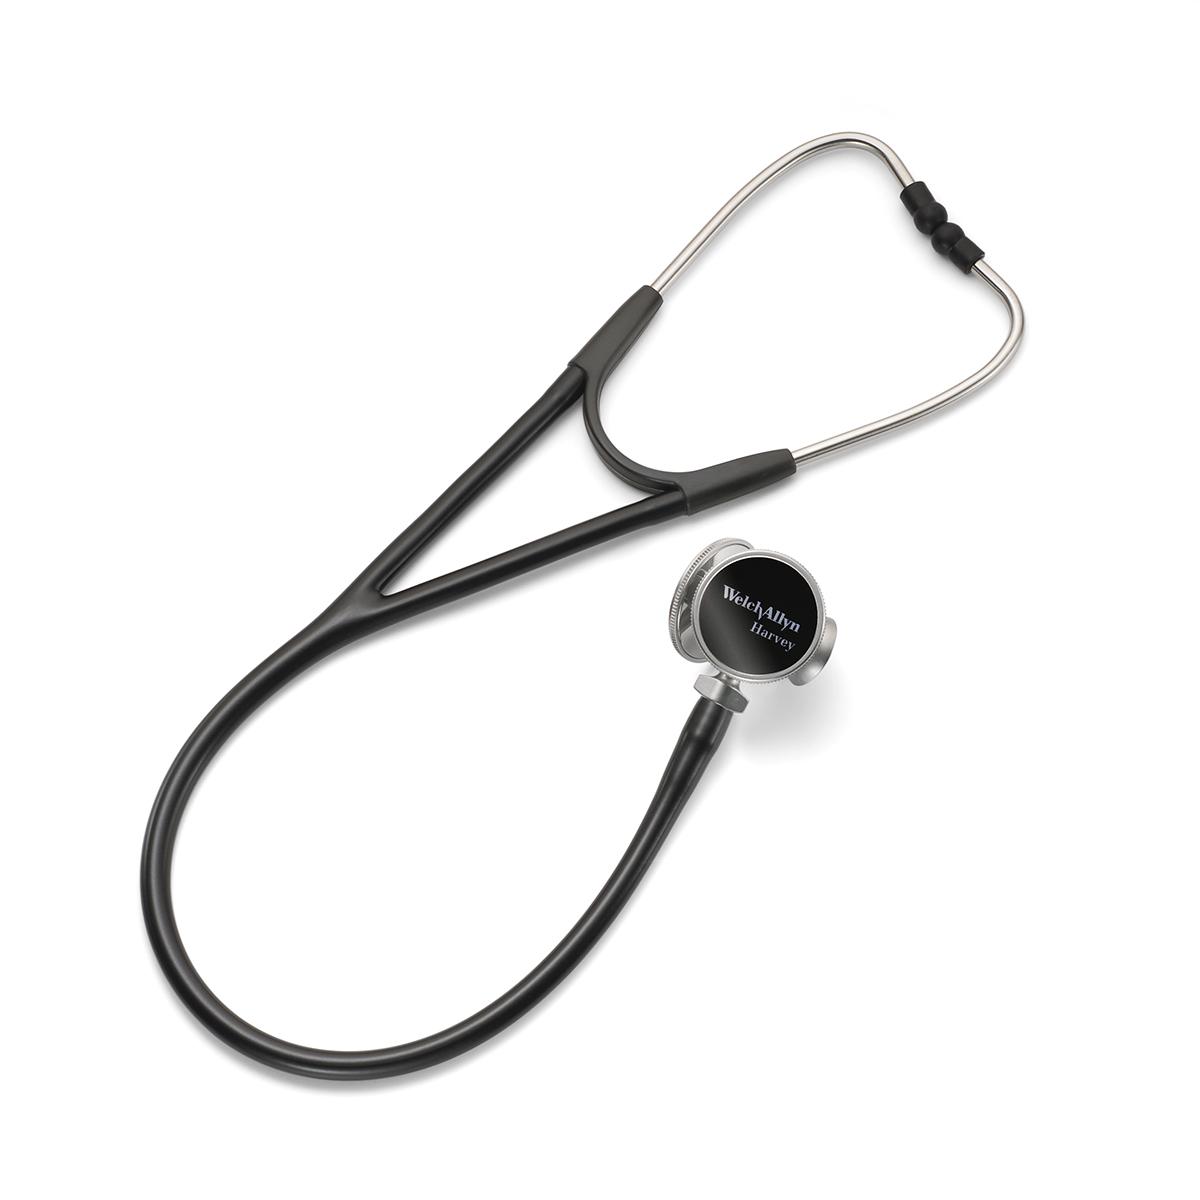 Lo stetoscopio Harvey DLX è dotato di una testina tripla opzionale, ruotabile, con campana in ottone e diaframma a superficie piatta e ondulata.